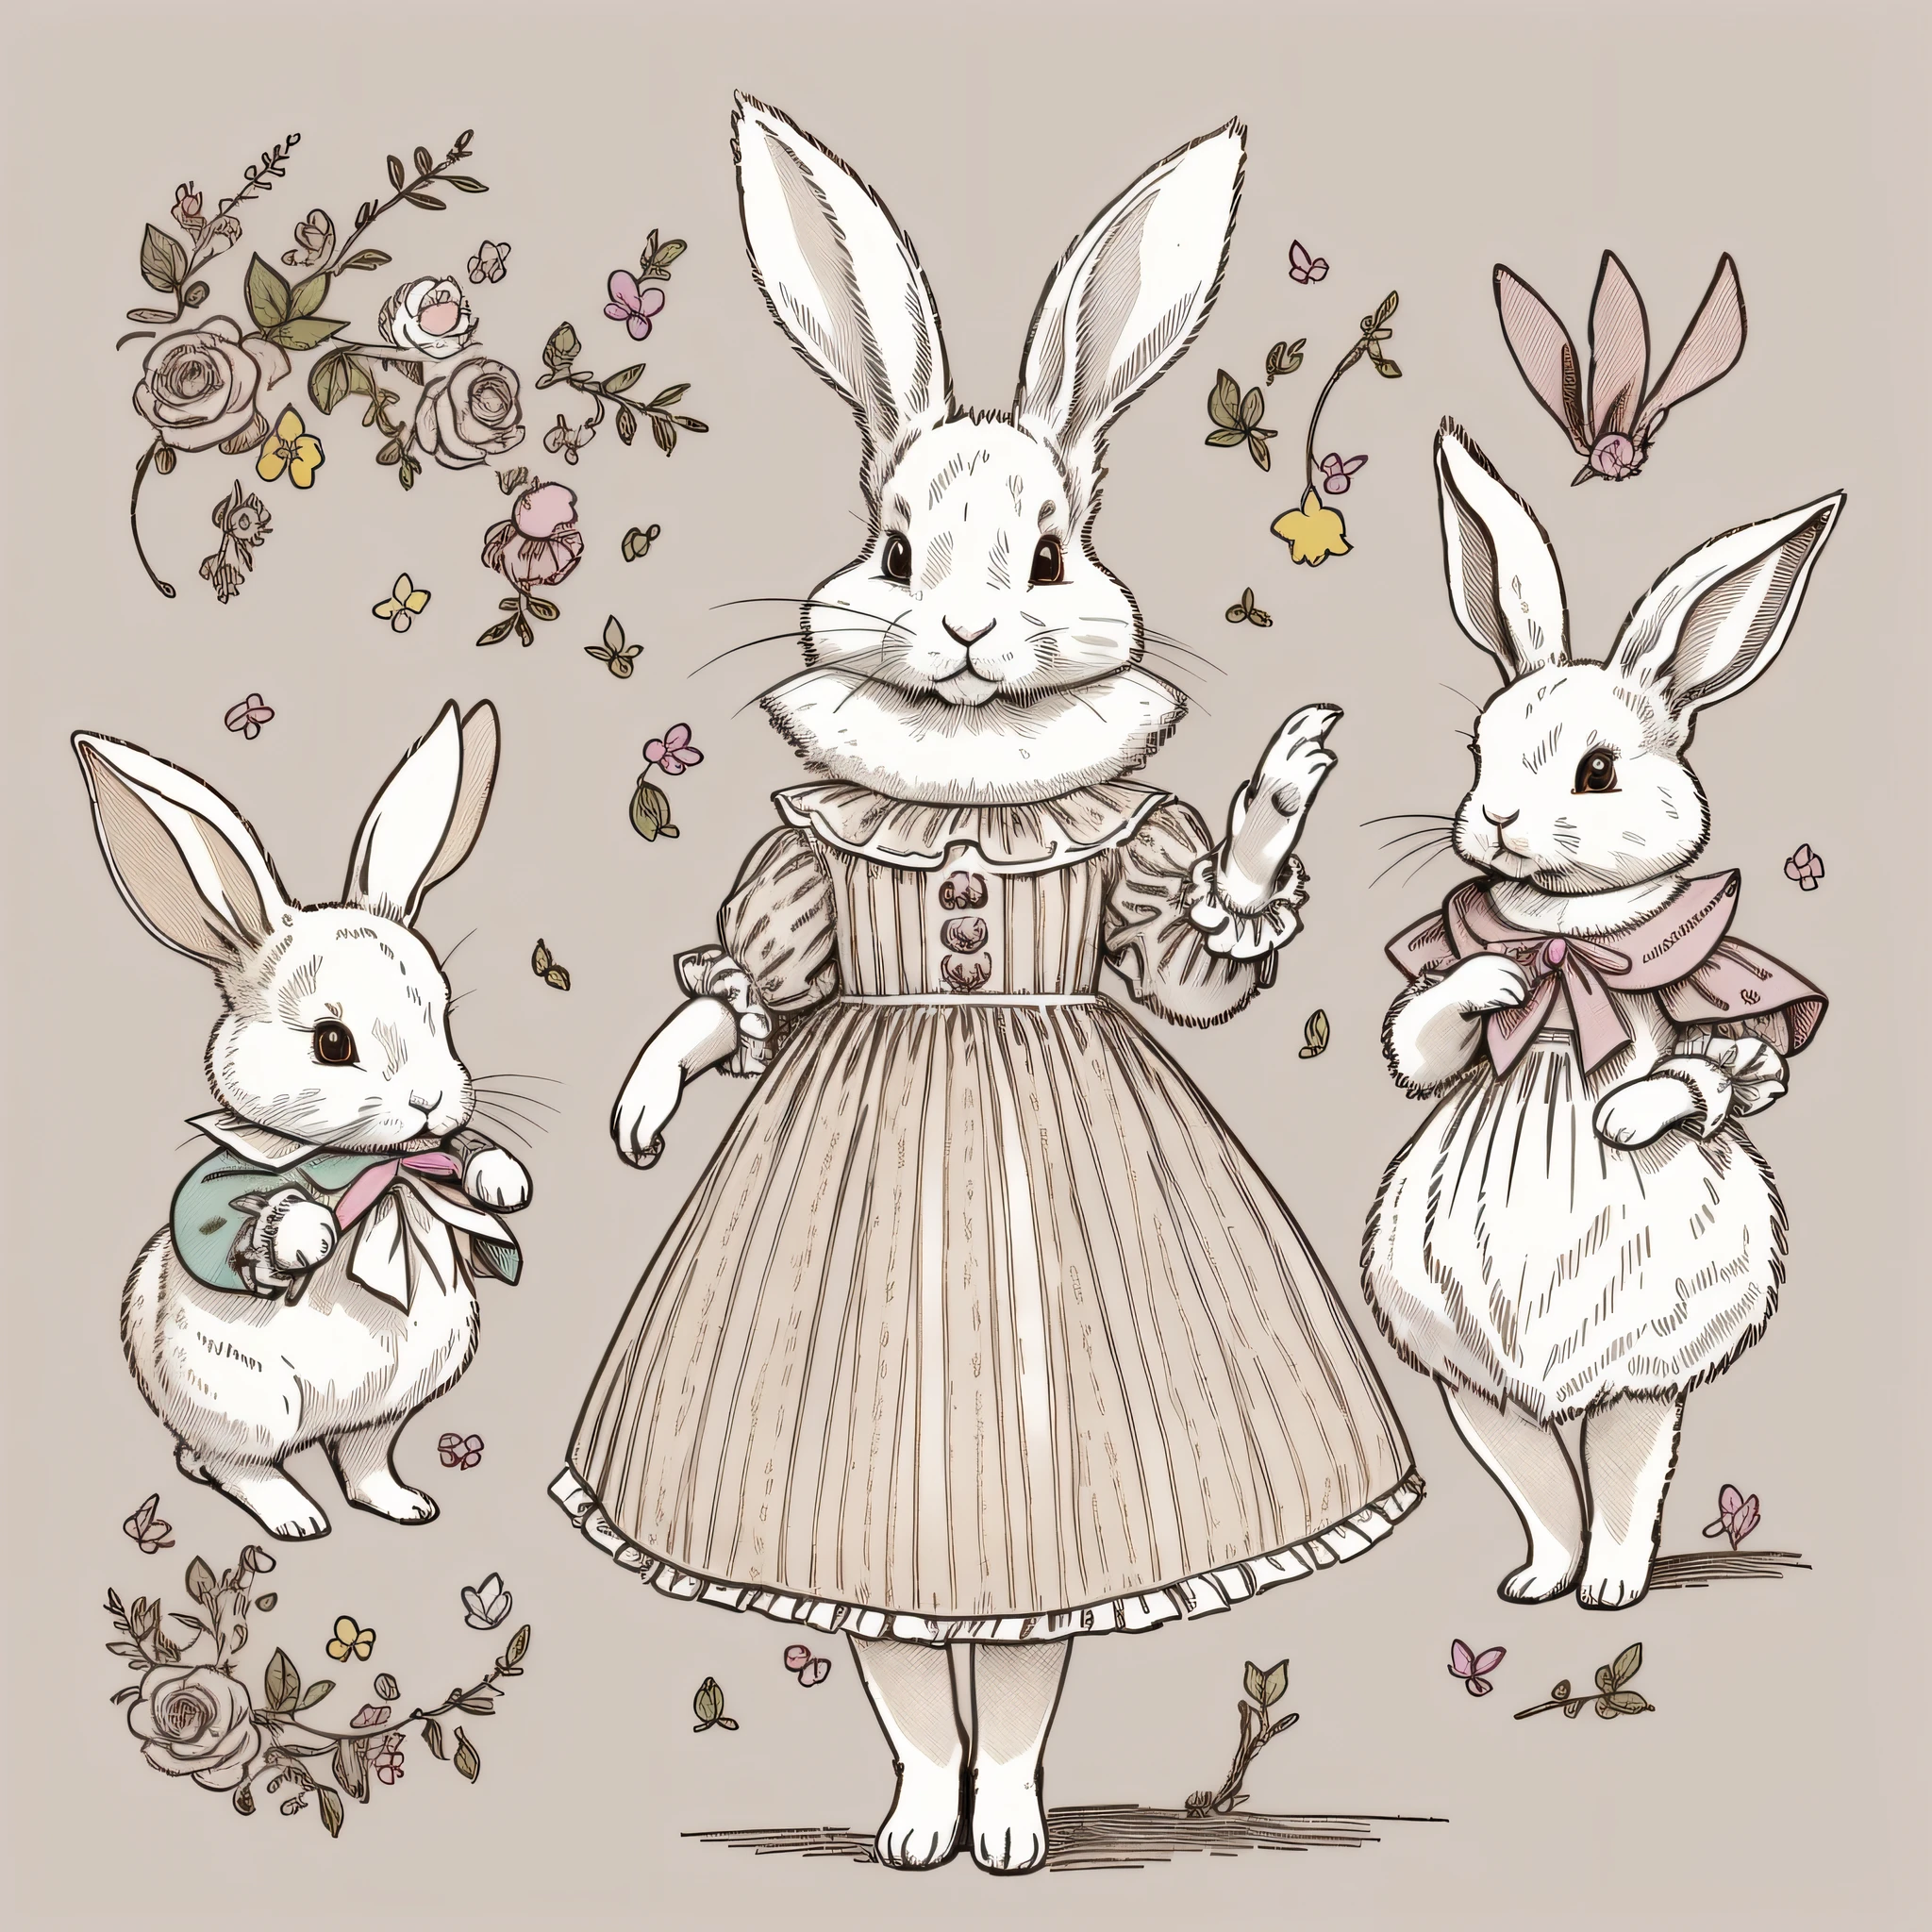 Несколько поз и выражений, Рисунок детской книжки с картинками, одетый кролик, белый кролик, Двуногий, Персонификация кролика, трехголовые, настройка рисунка, милый, два кроличьих уха, цветная иллюстрация, Установочный материал, Красочные цвета, Деформированный кролик, Французская одежда XVIII века.,